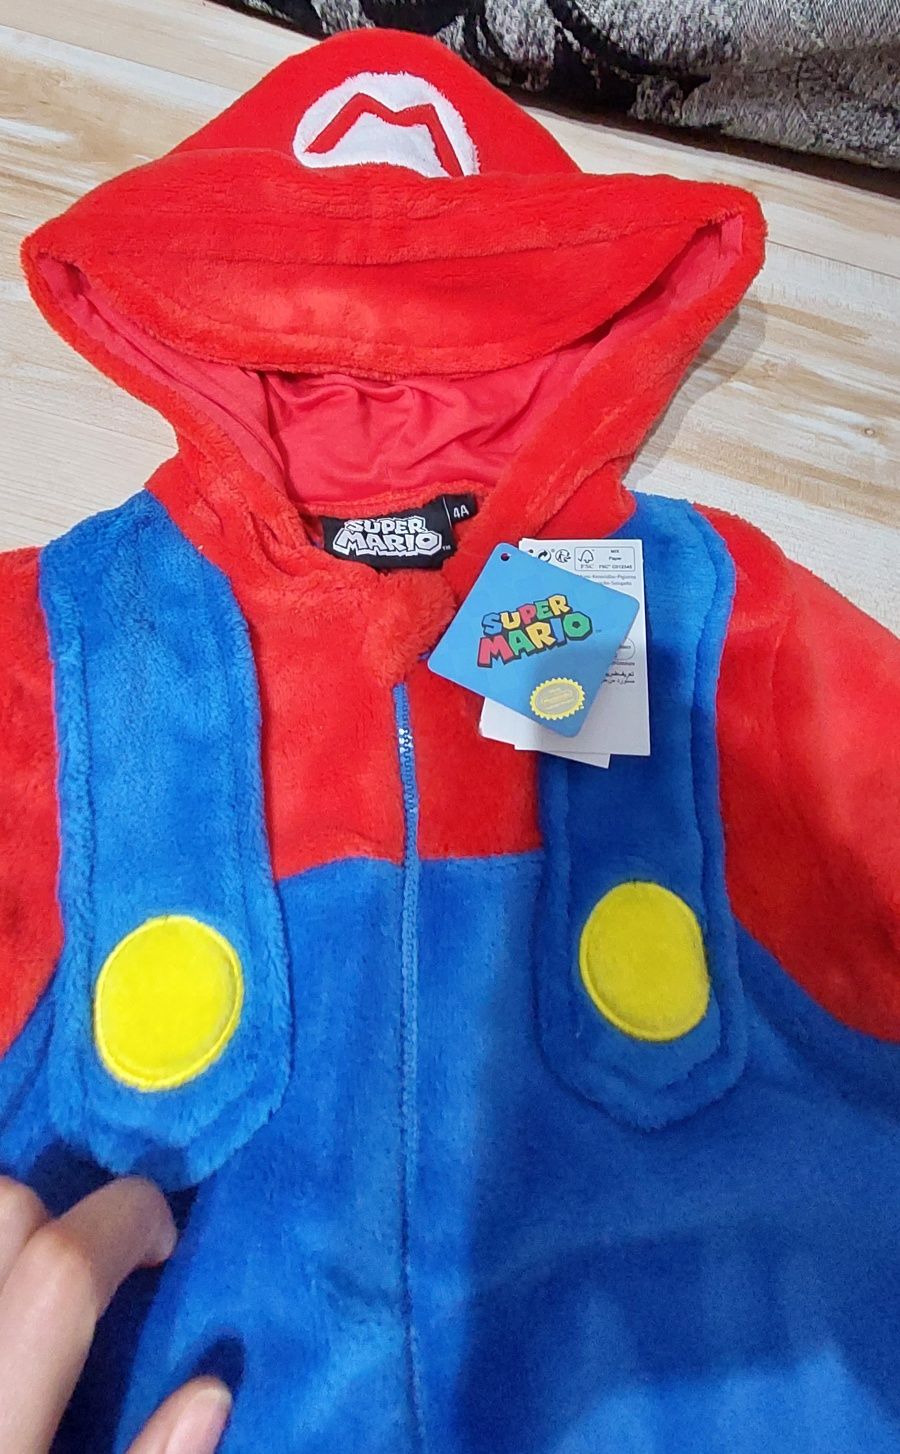 Costum Supermario bebe copil nou cu eticheta